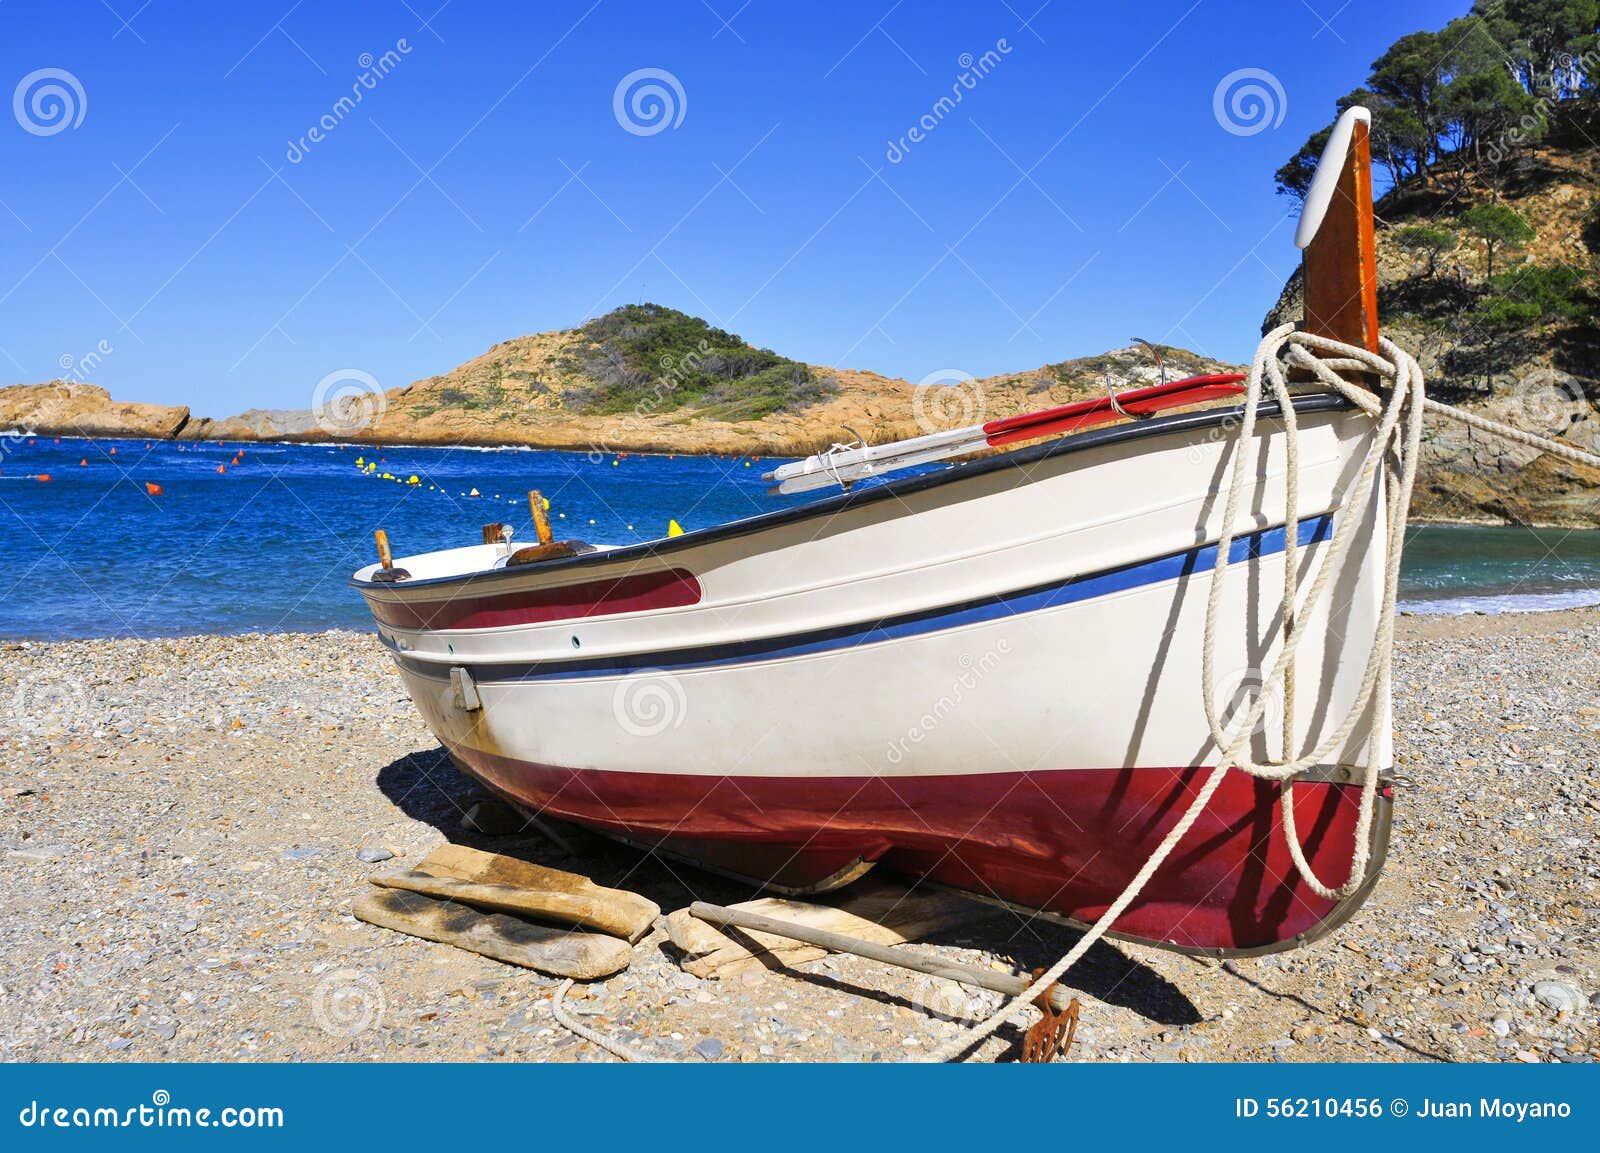 bateau echoue sur la plage